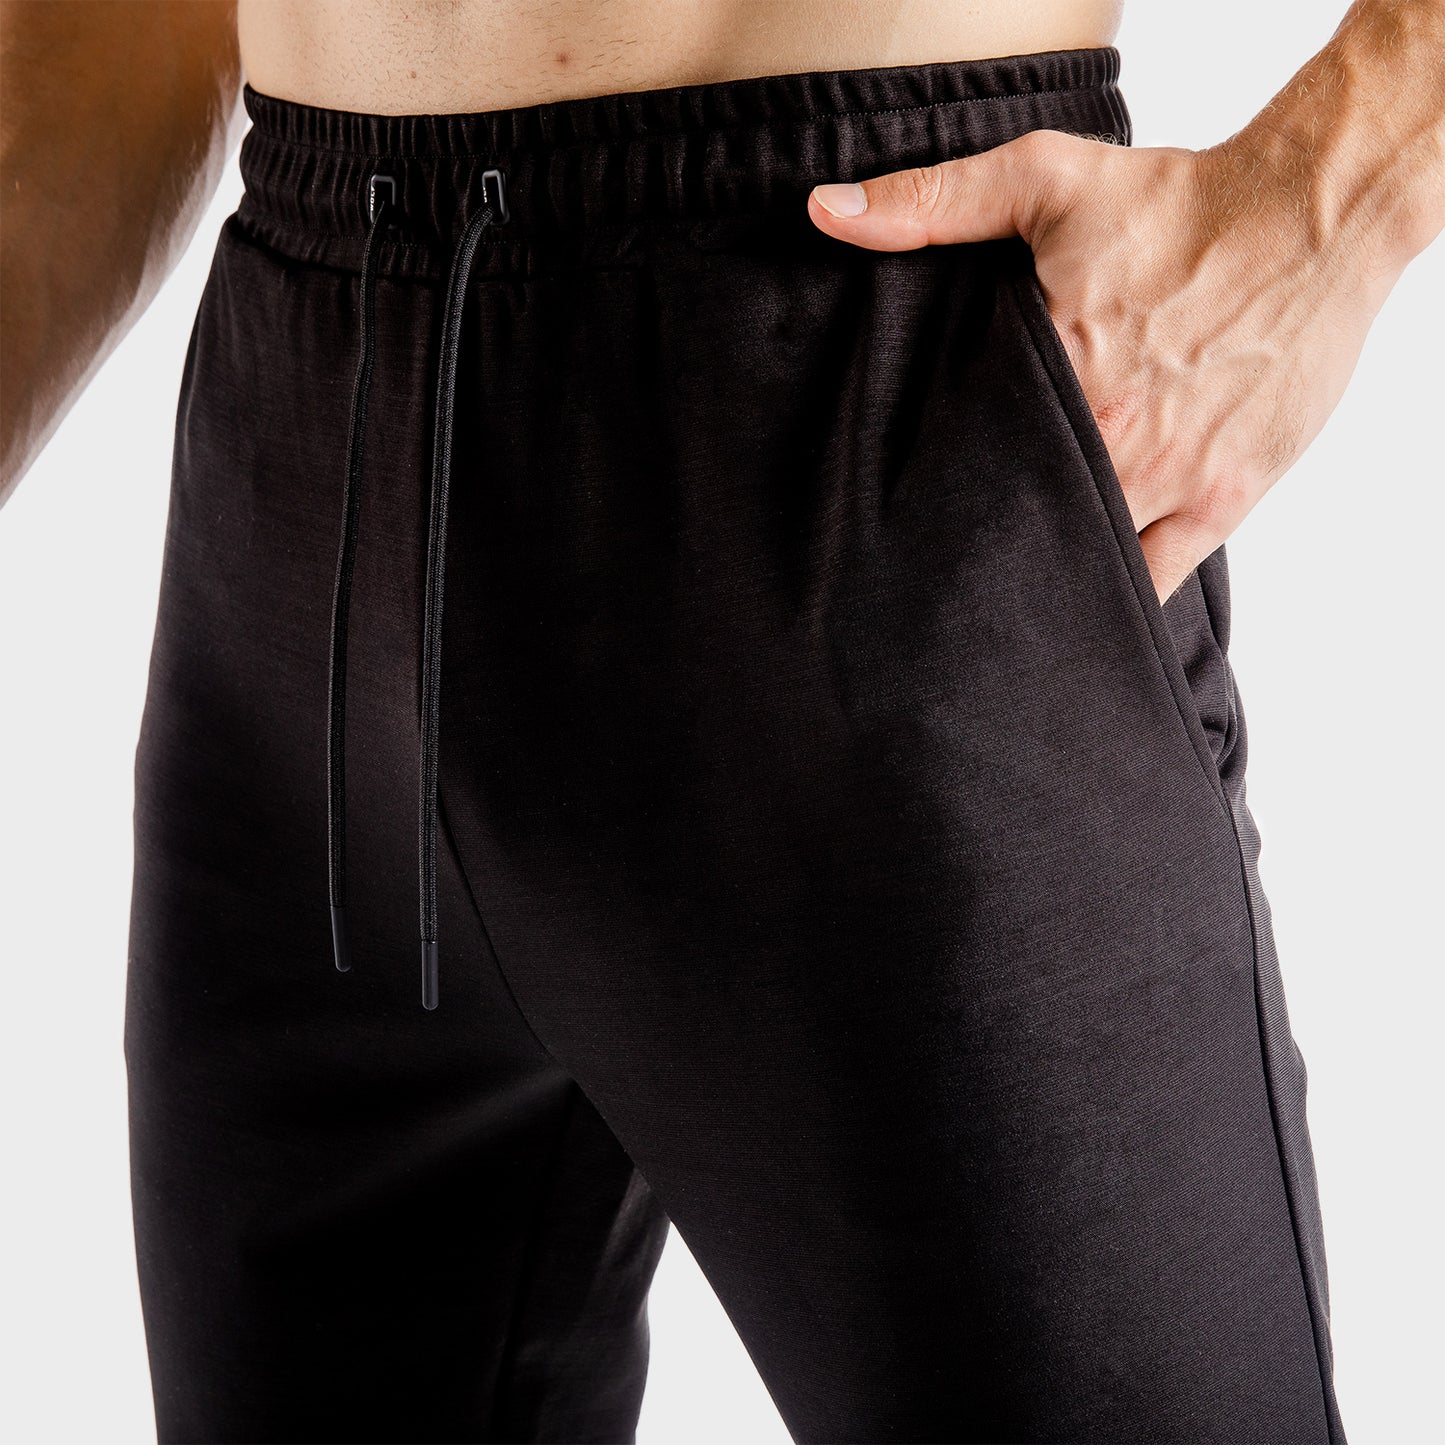 squatwolf-workout-pants-for-men-flux-joggers-black-gym-wear